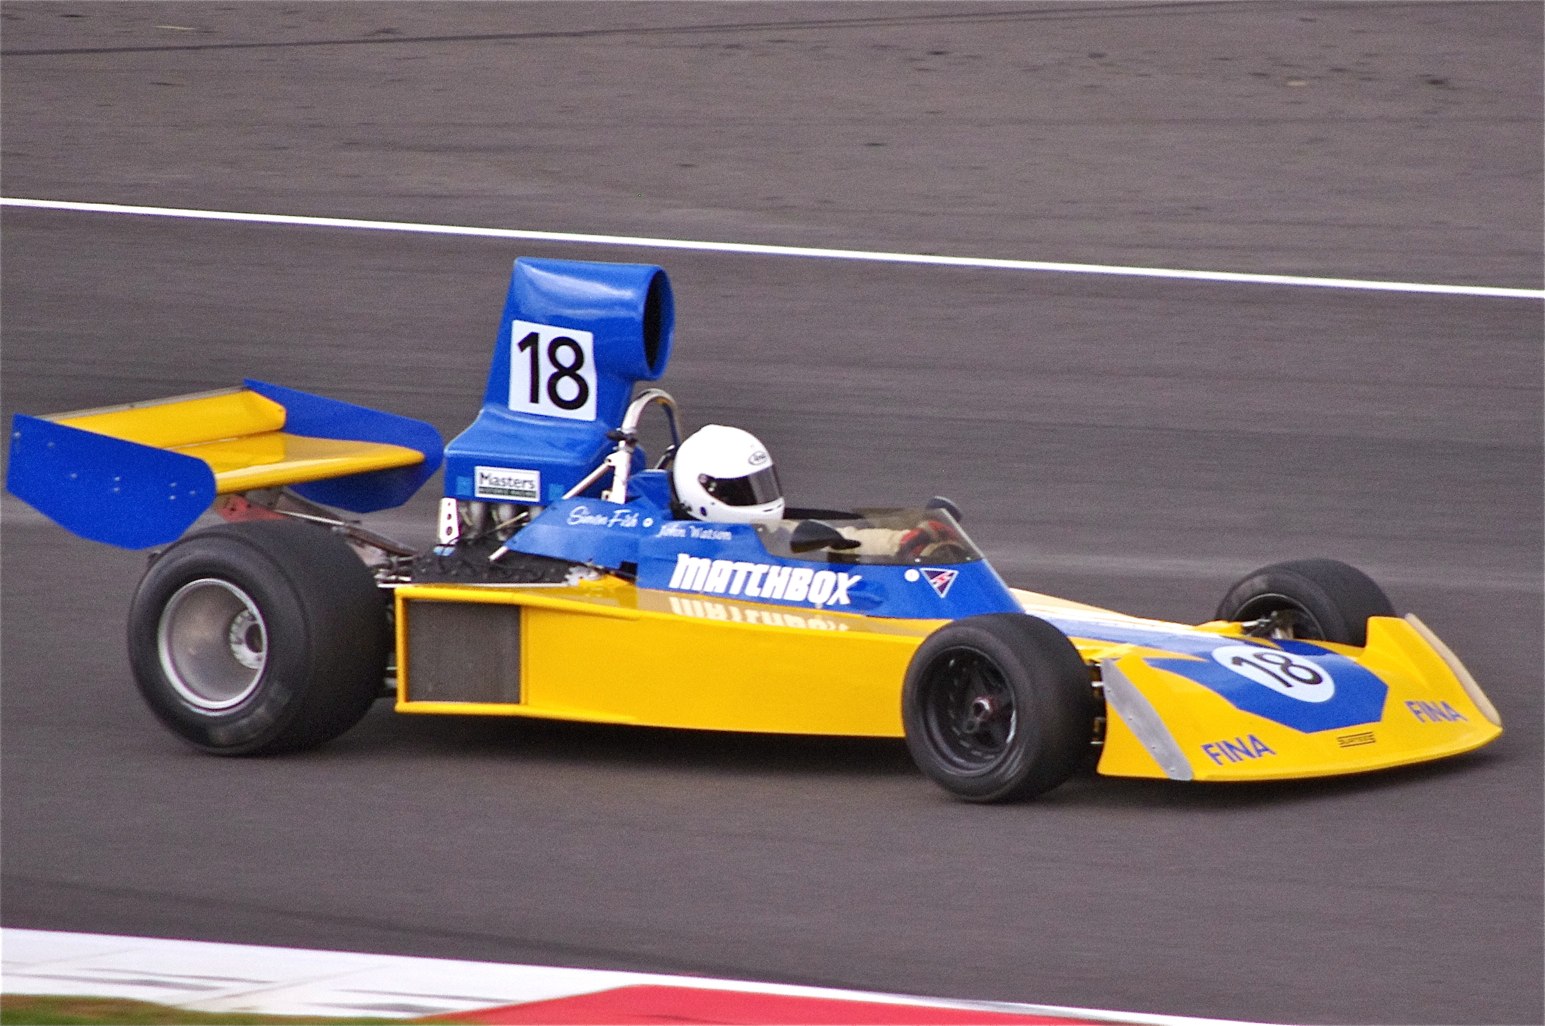 Surtees TS16